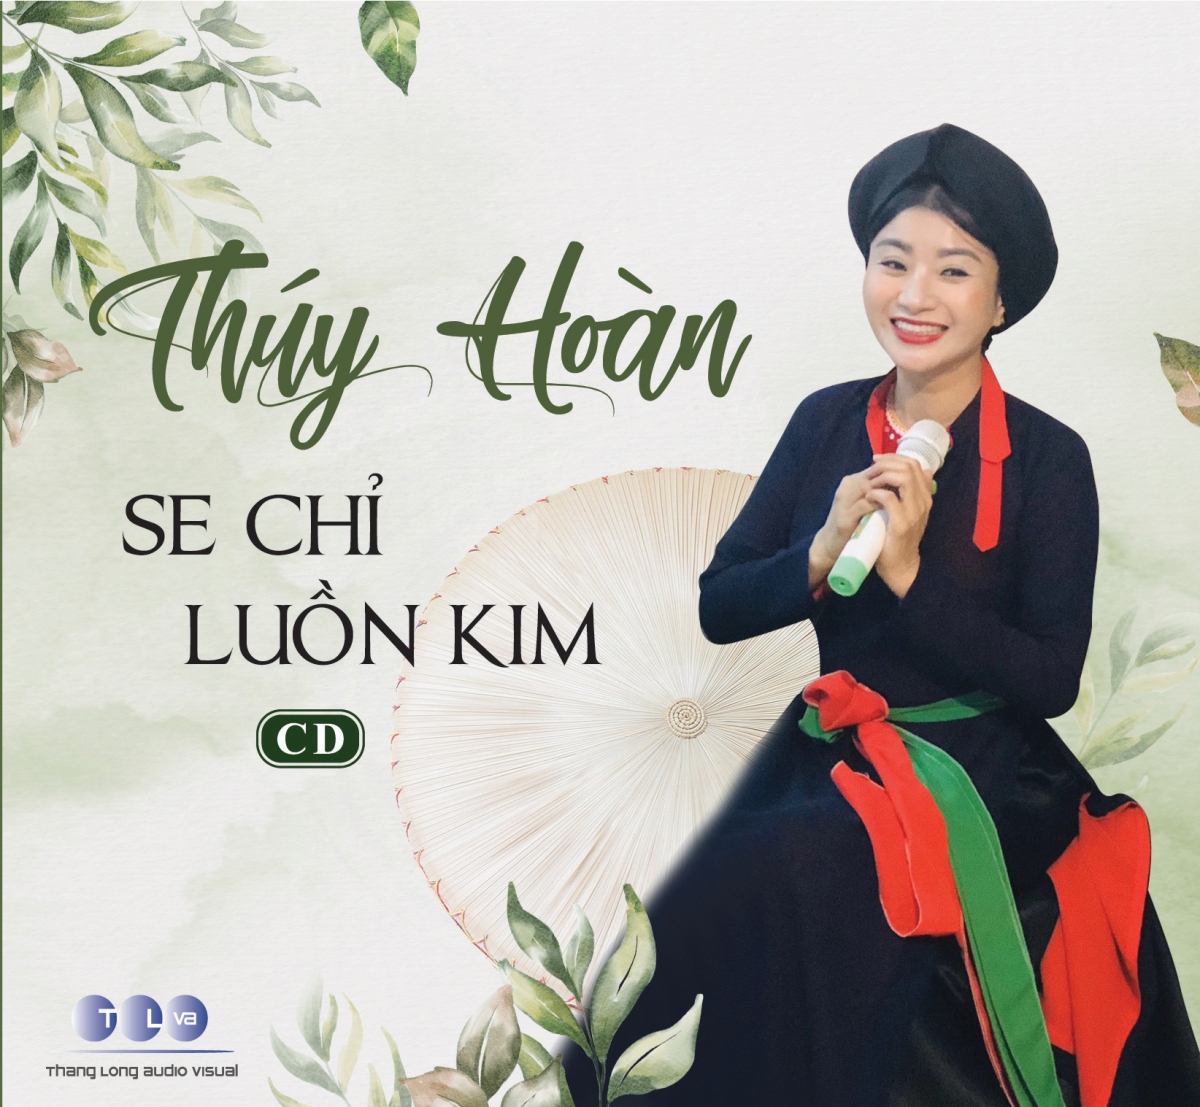 Ca nương Thuý Hoàn cùng chồng bán album, sách gây quỹ ủng hộ miền Trung